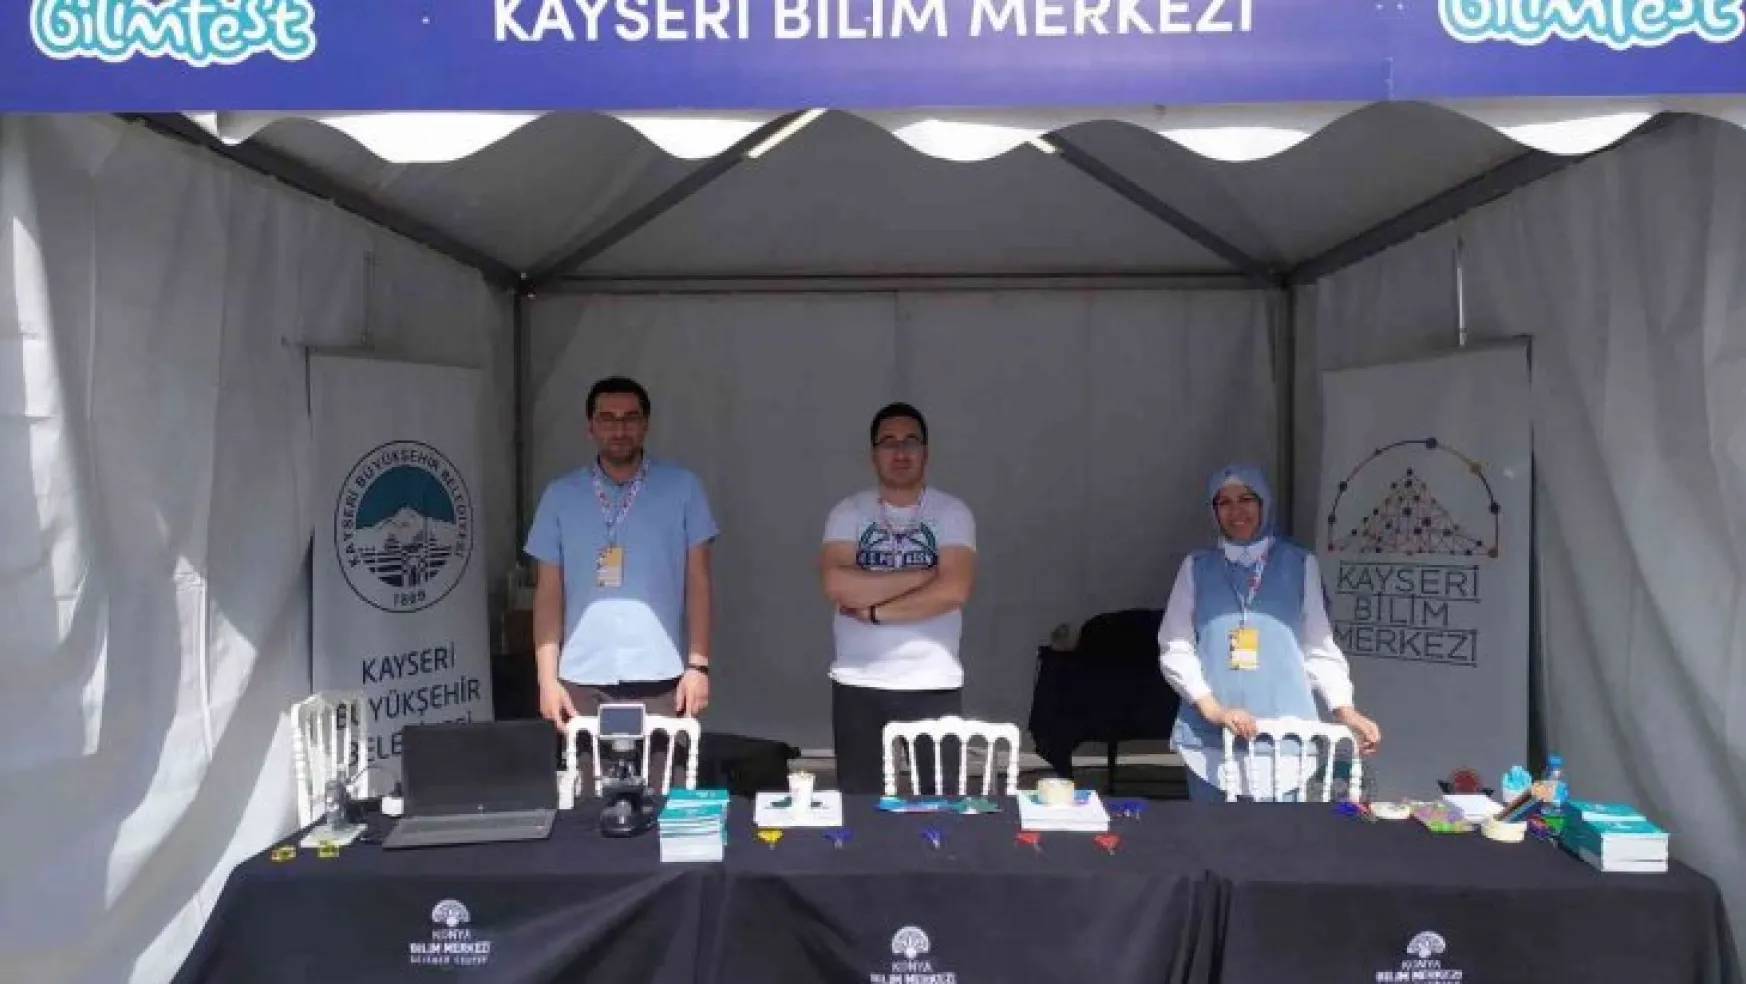 Kayseri Bilim Merkezi, Konya Bilimfest'te ilgi odağı oldu